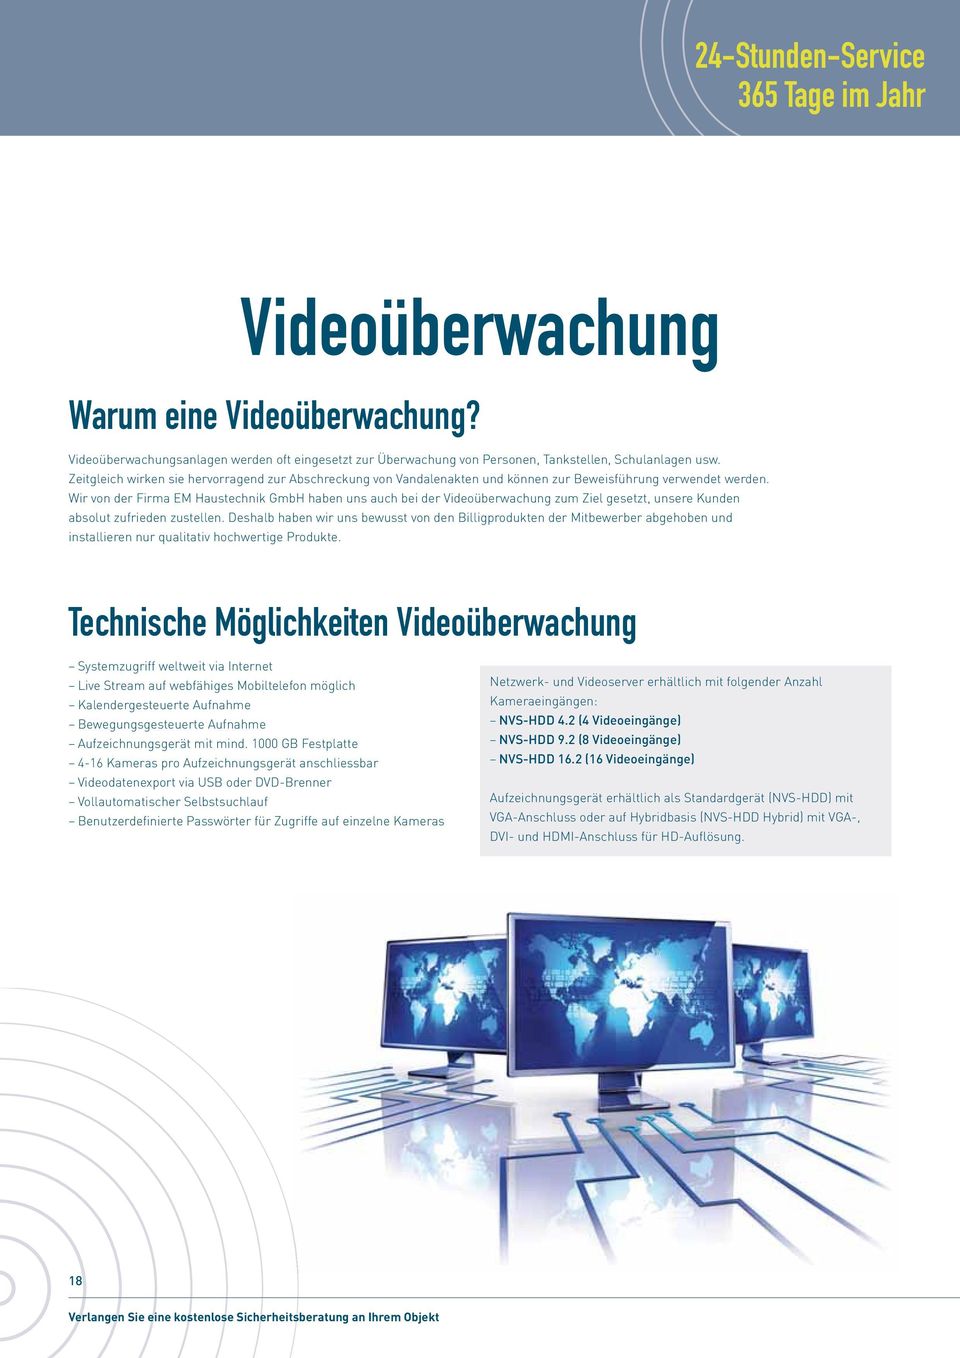 Wir von der Firma EM Haustechnik GmbH haben uns auch bei der Videoüberwachung zum Ziel gesetzt, unsere Kunden absolut zufrieden zustellen.